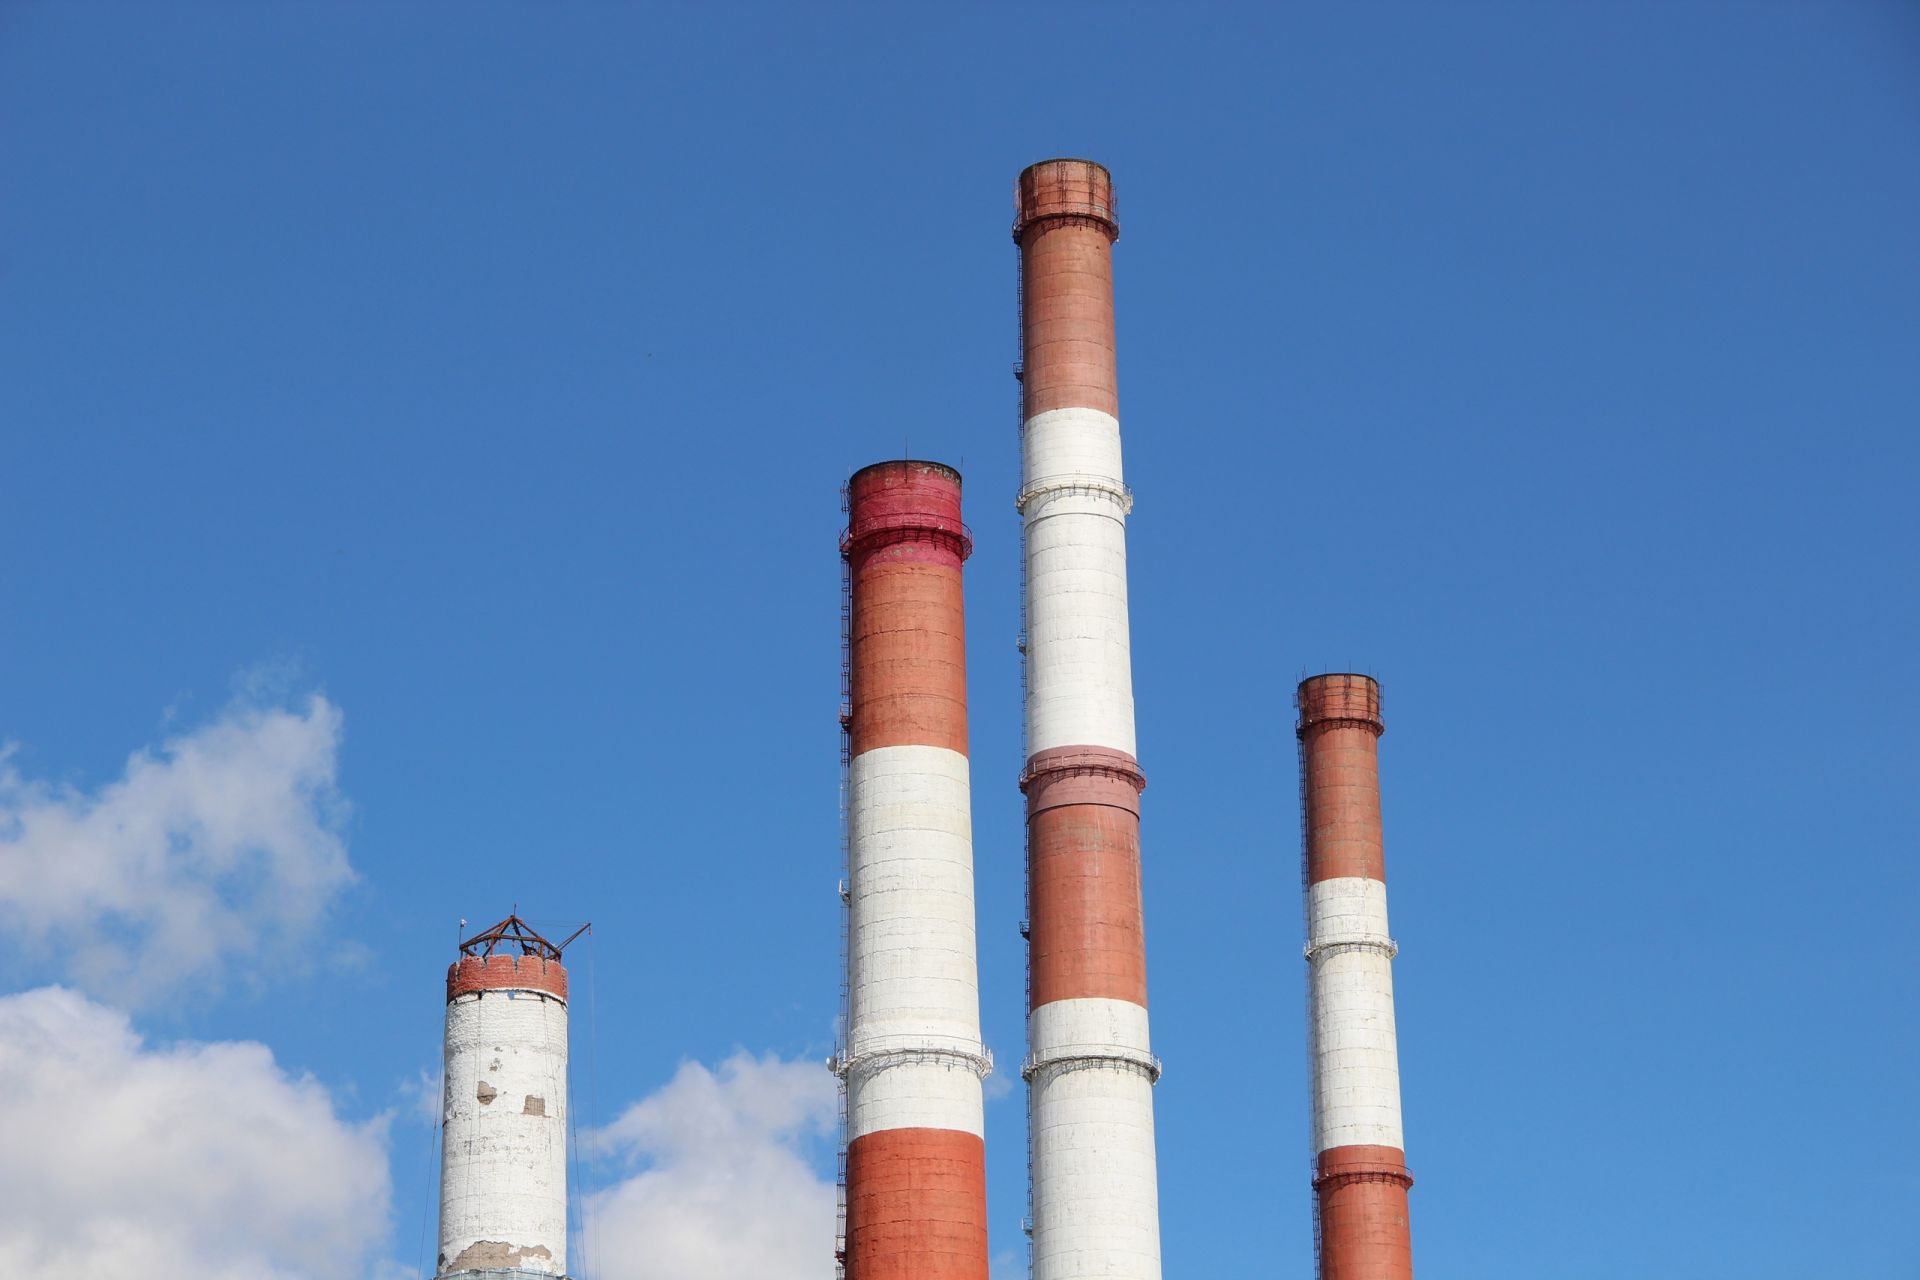 Демонтаж дымовой трубы Заинской ГРЭС: утилизировано 547 тонн стройматериала